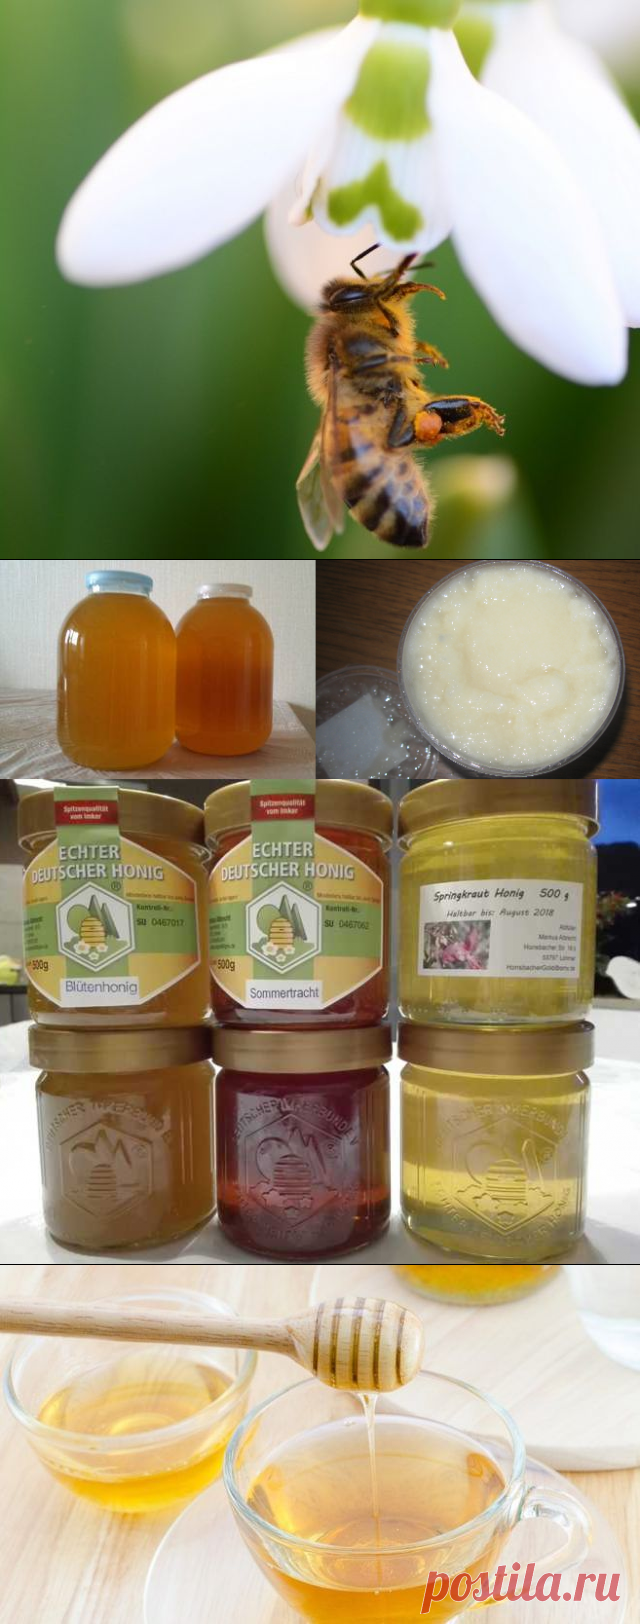 [Решено] Существует ли подснежниковый мед и в чем его польза